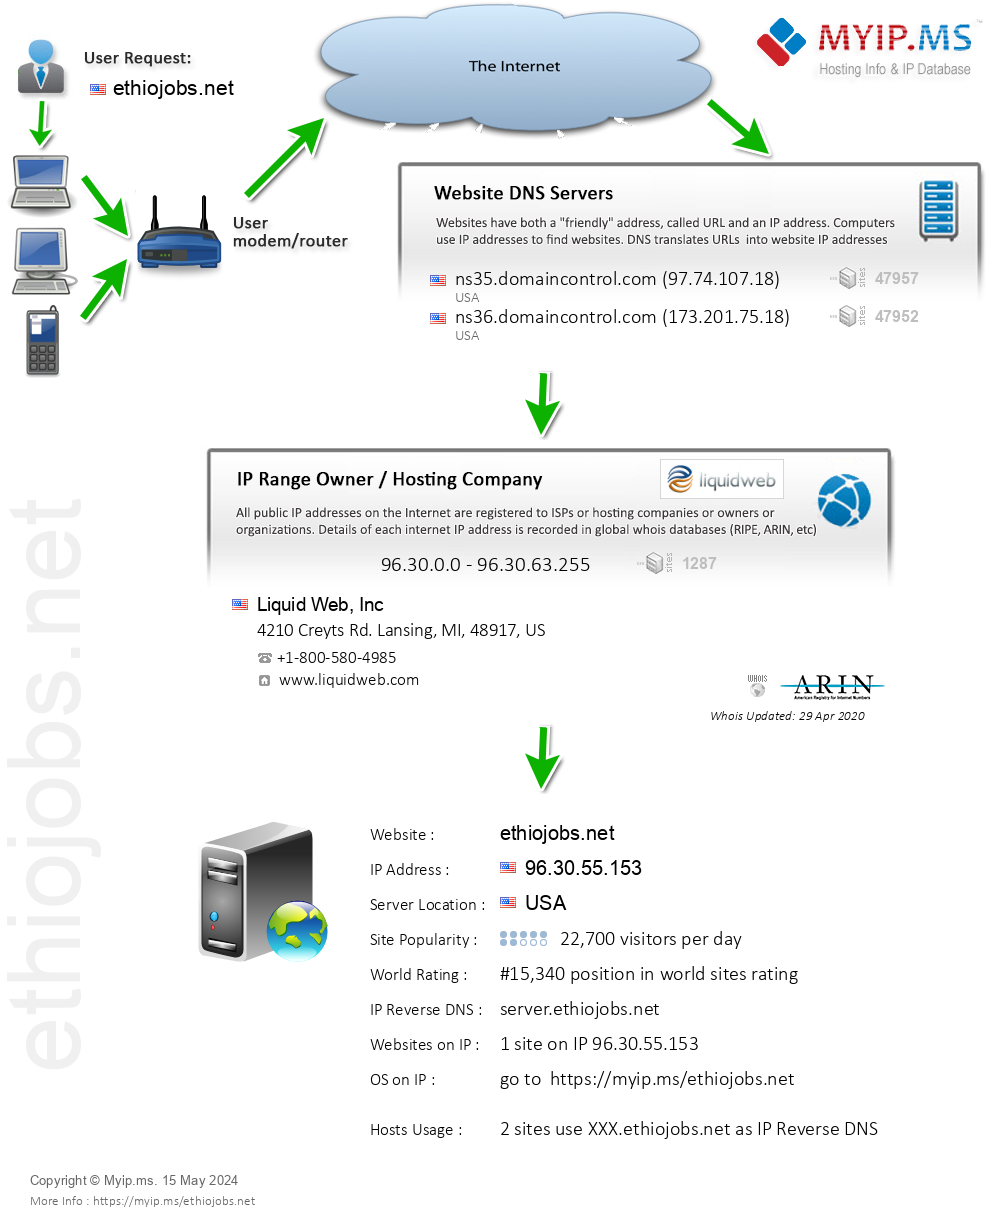 Ethiojobs.net - Website Hosting Visual IP Diagram